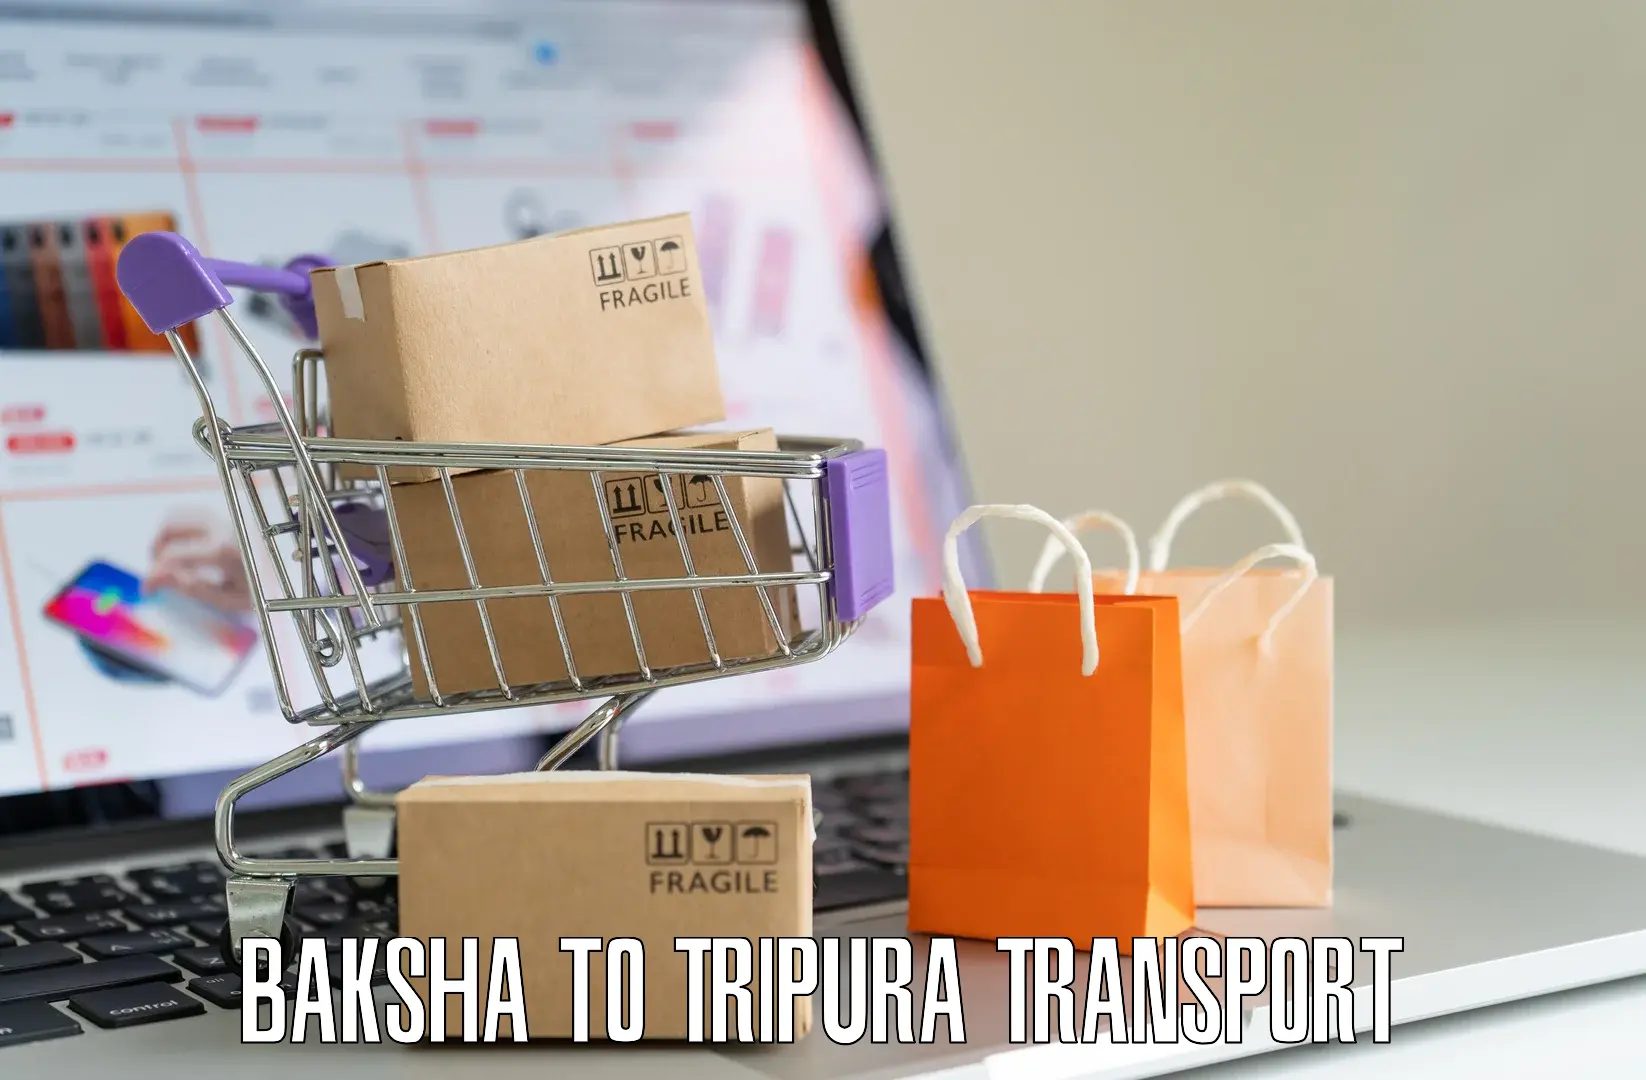 Daily parcel service transport Baksha to Bishalgarh